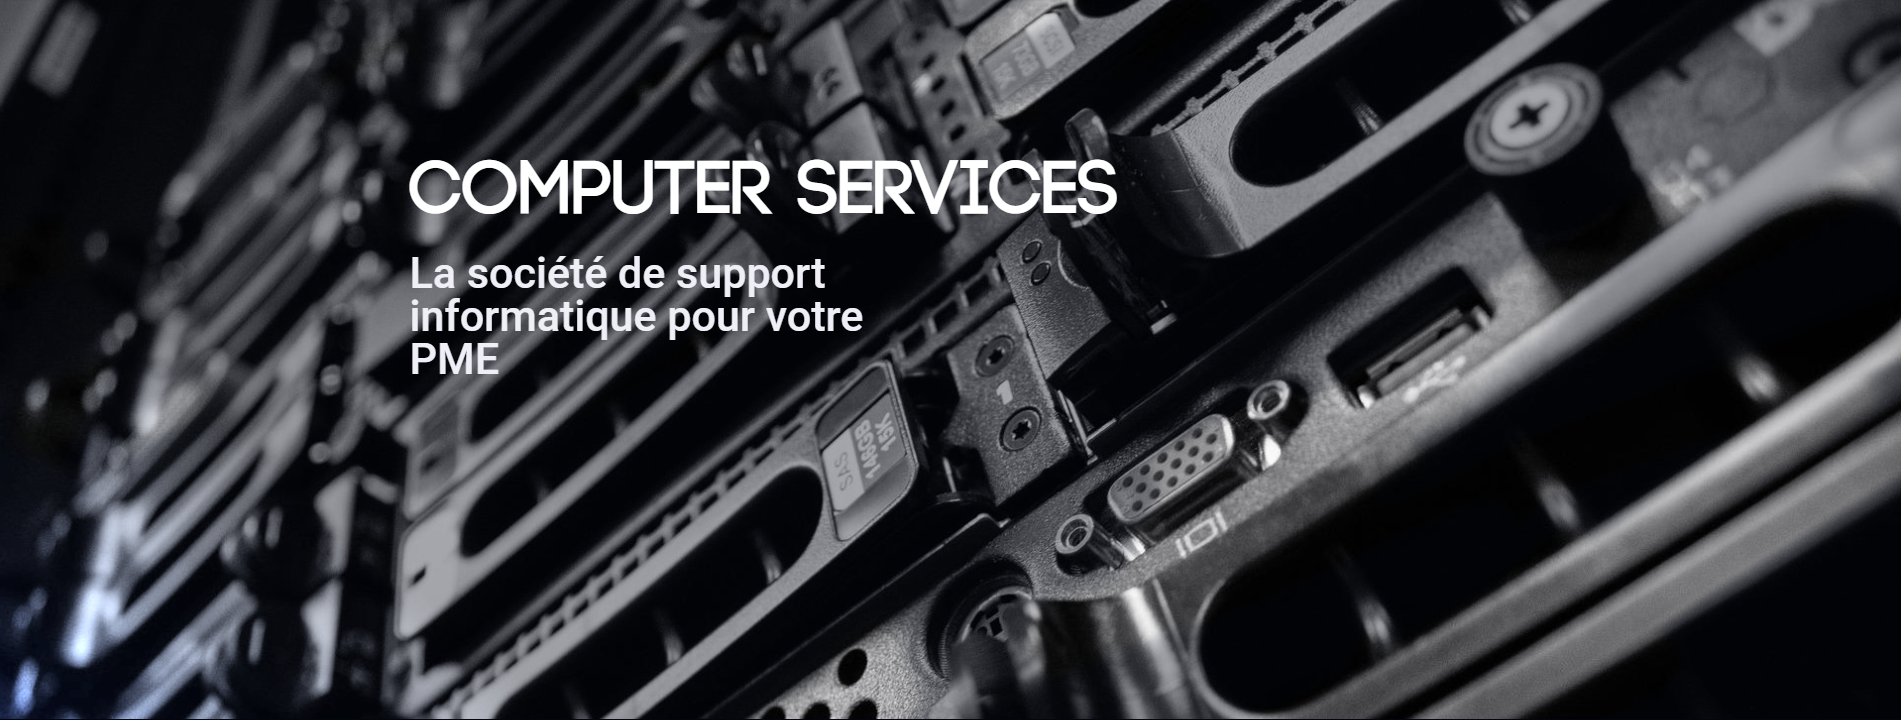 (c) Computer-services.fr